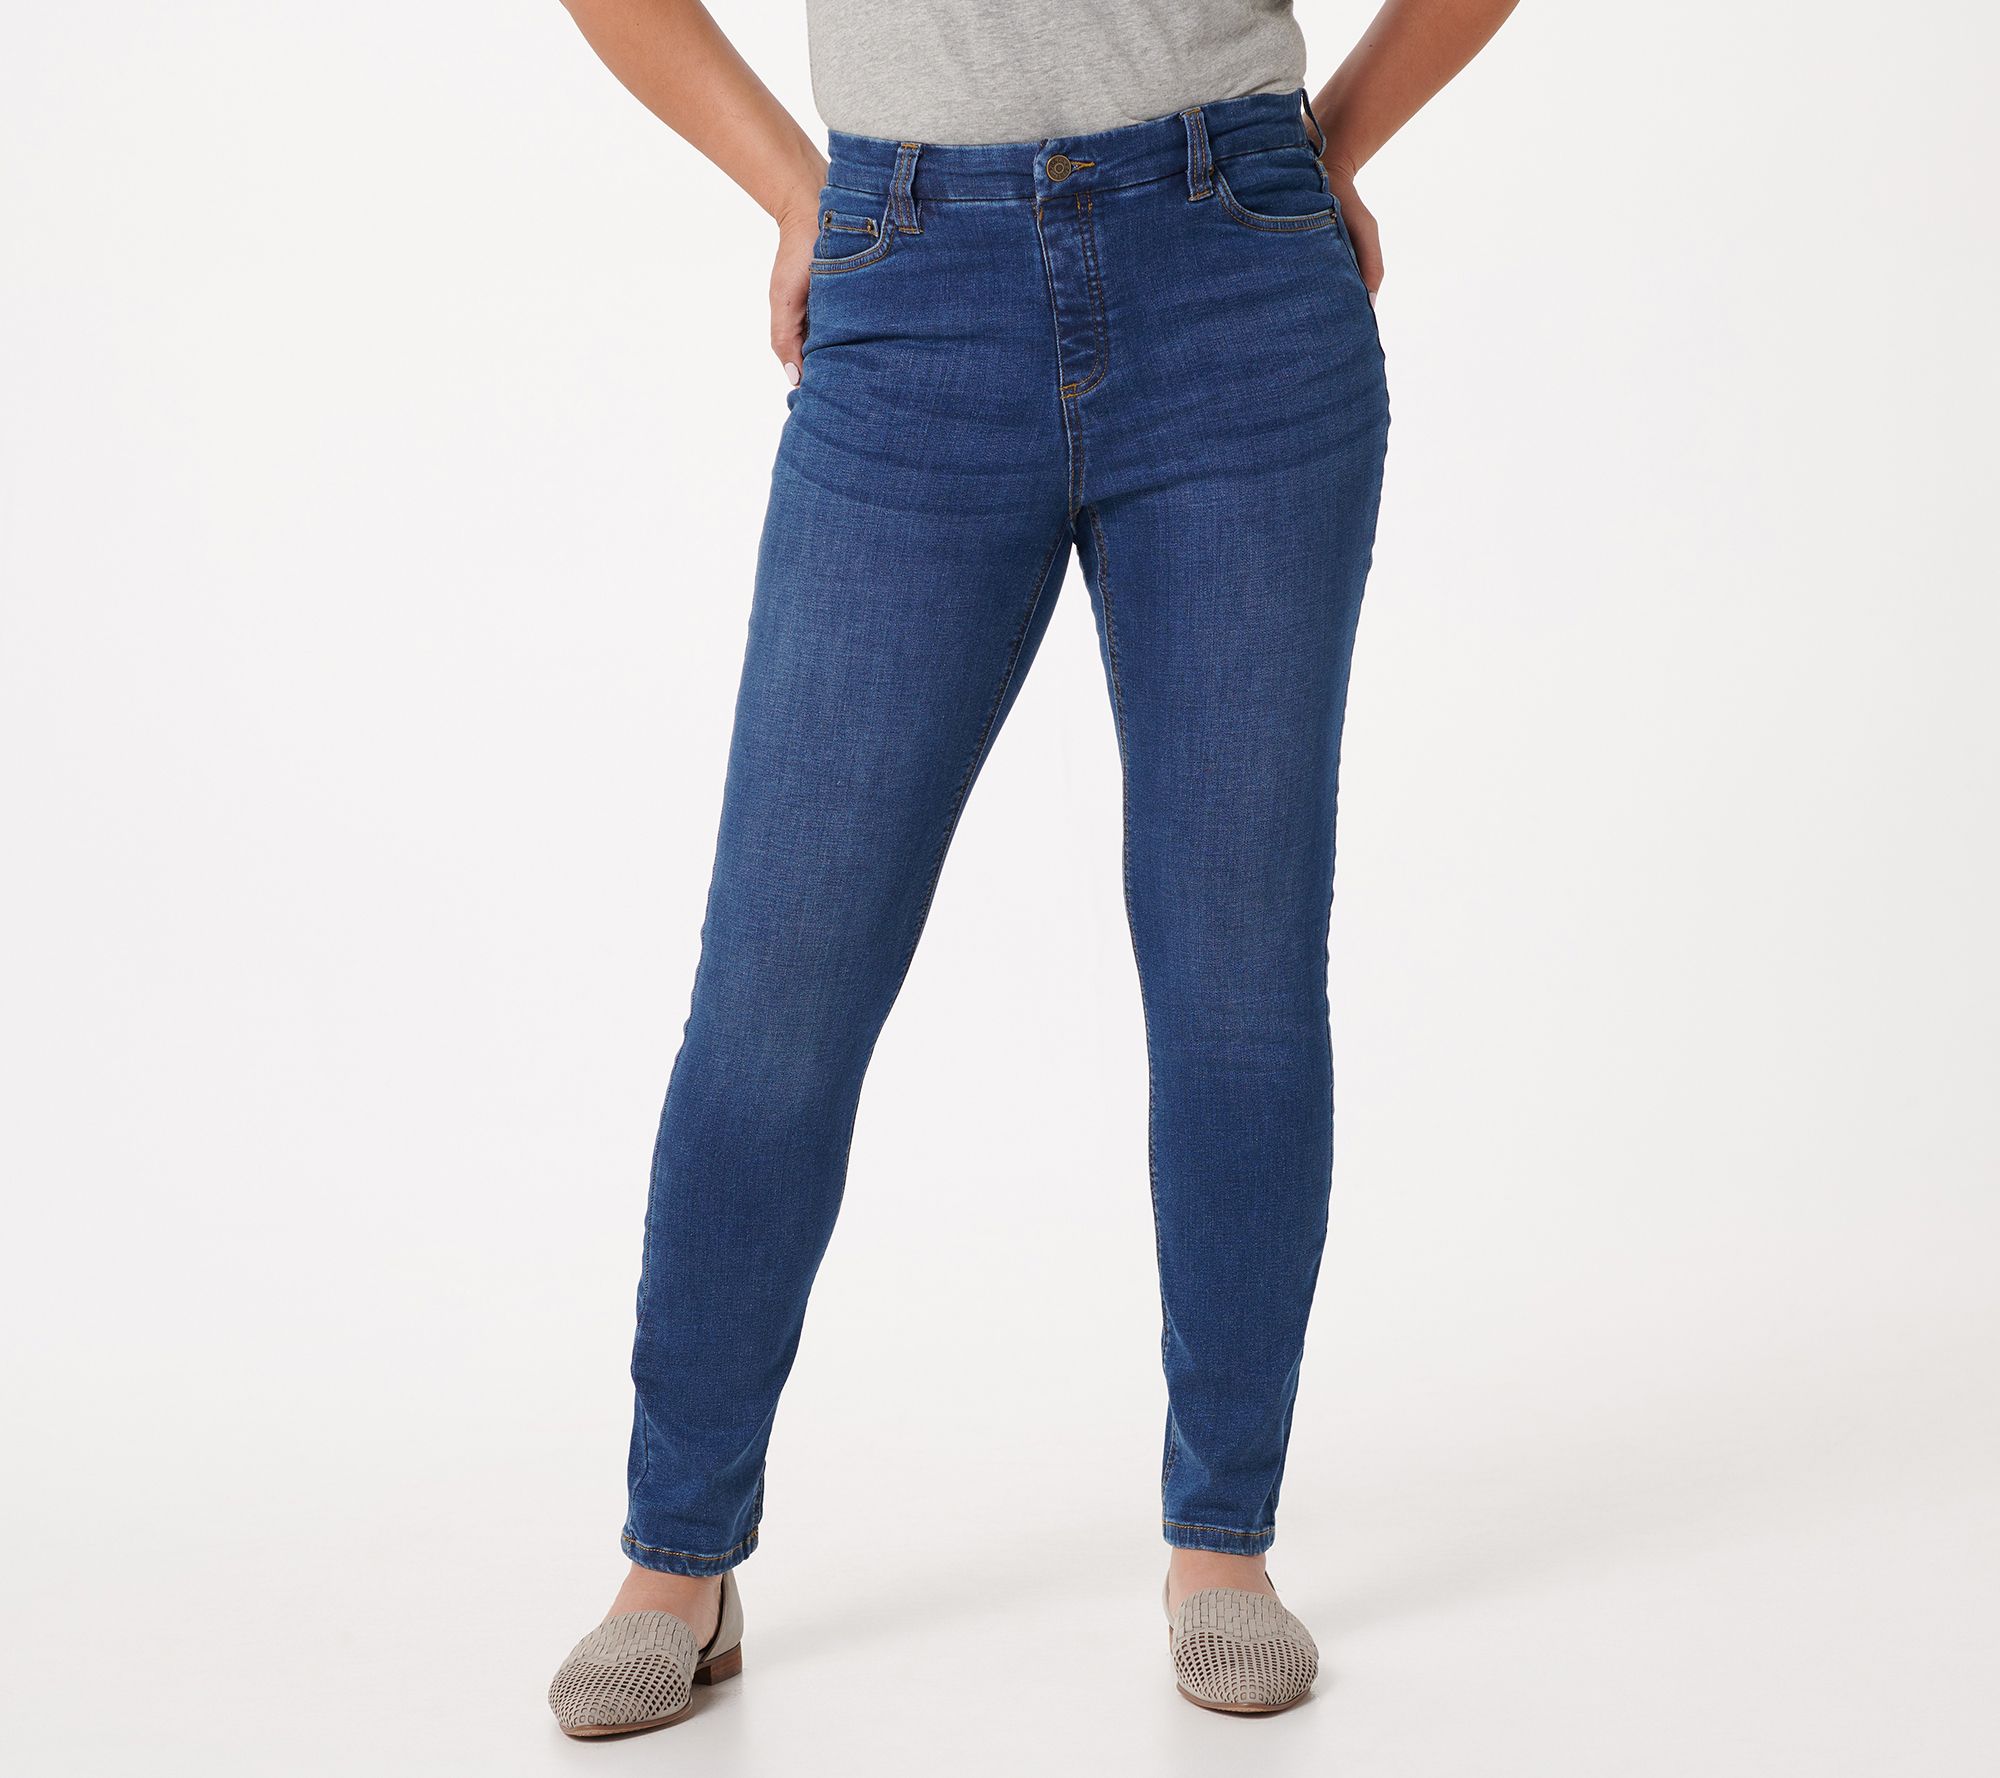 NYDJ Women's Jeans 6 Skinny Fit Stretch Jean Medium Wash Blue 6